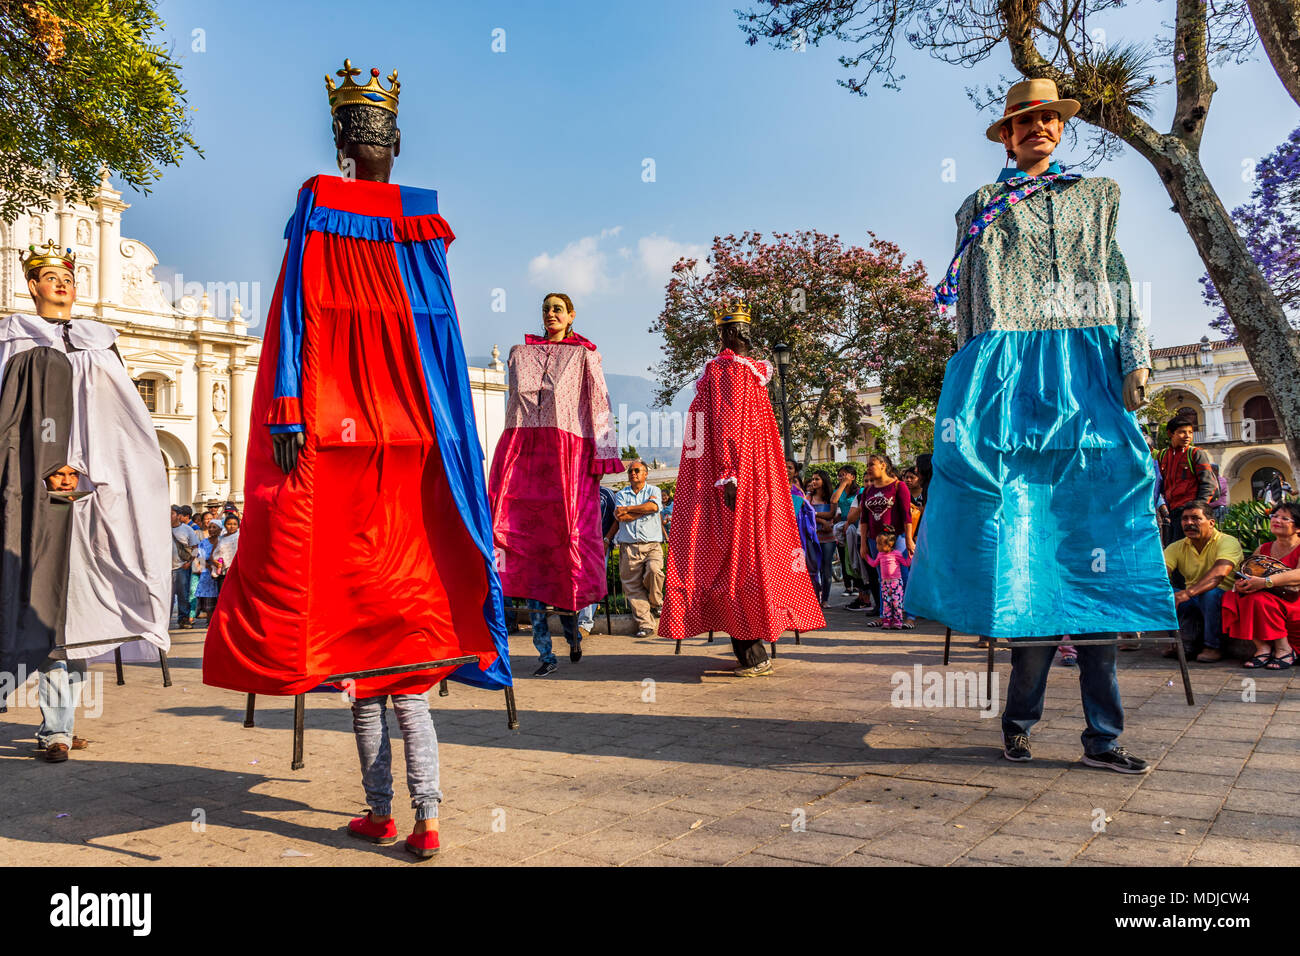 Antigua, Guatemala - 9. März 2018: Tanz der traditionellen Riesen Volkstanz Marionetten namens Gigantes in Central Plaza vor der Kathedrale Stockfoto